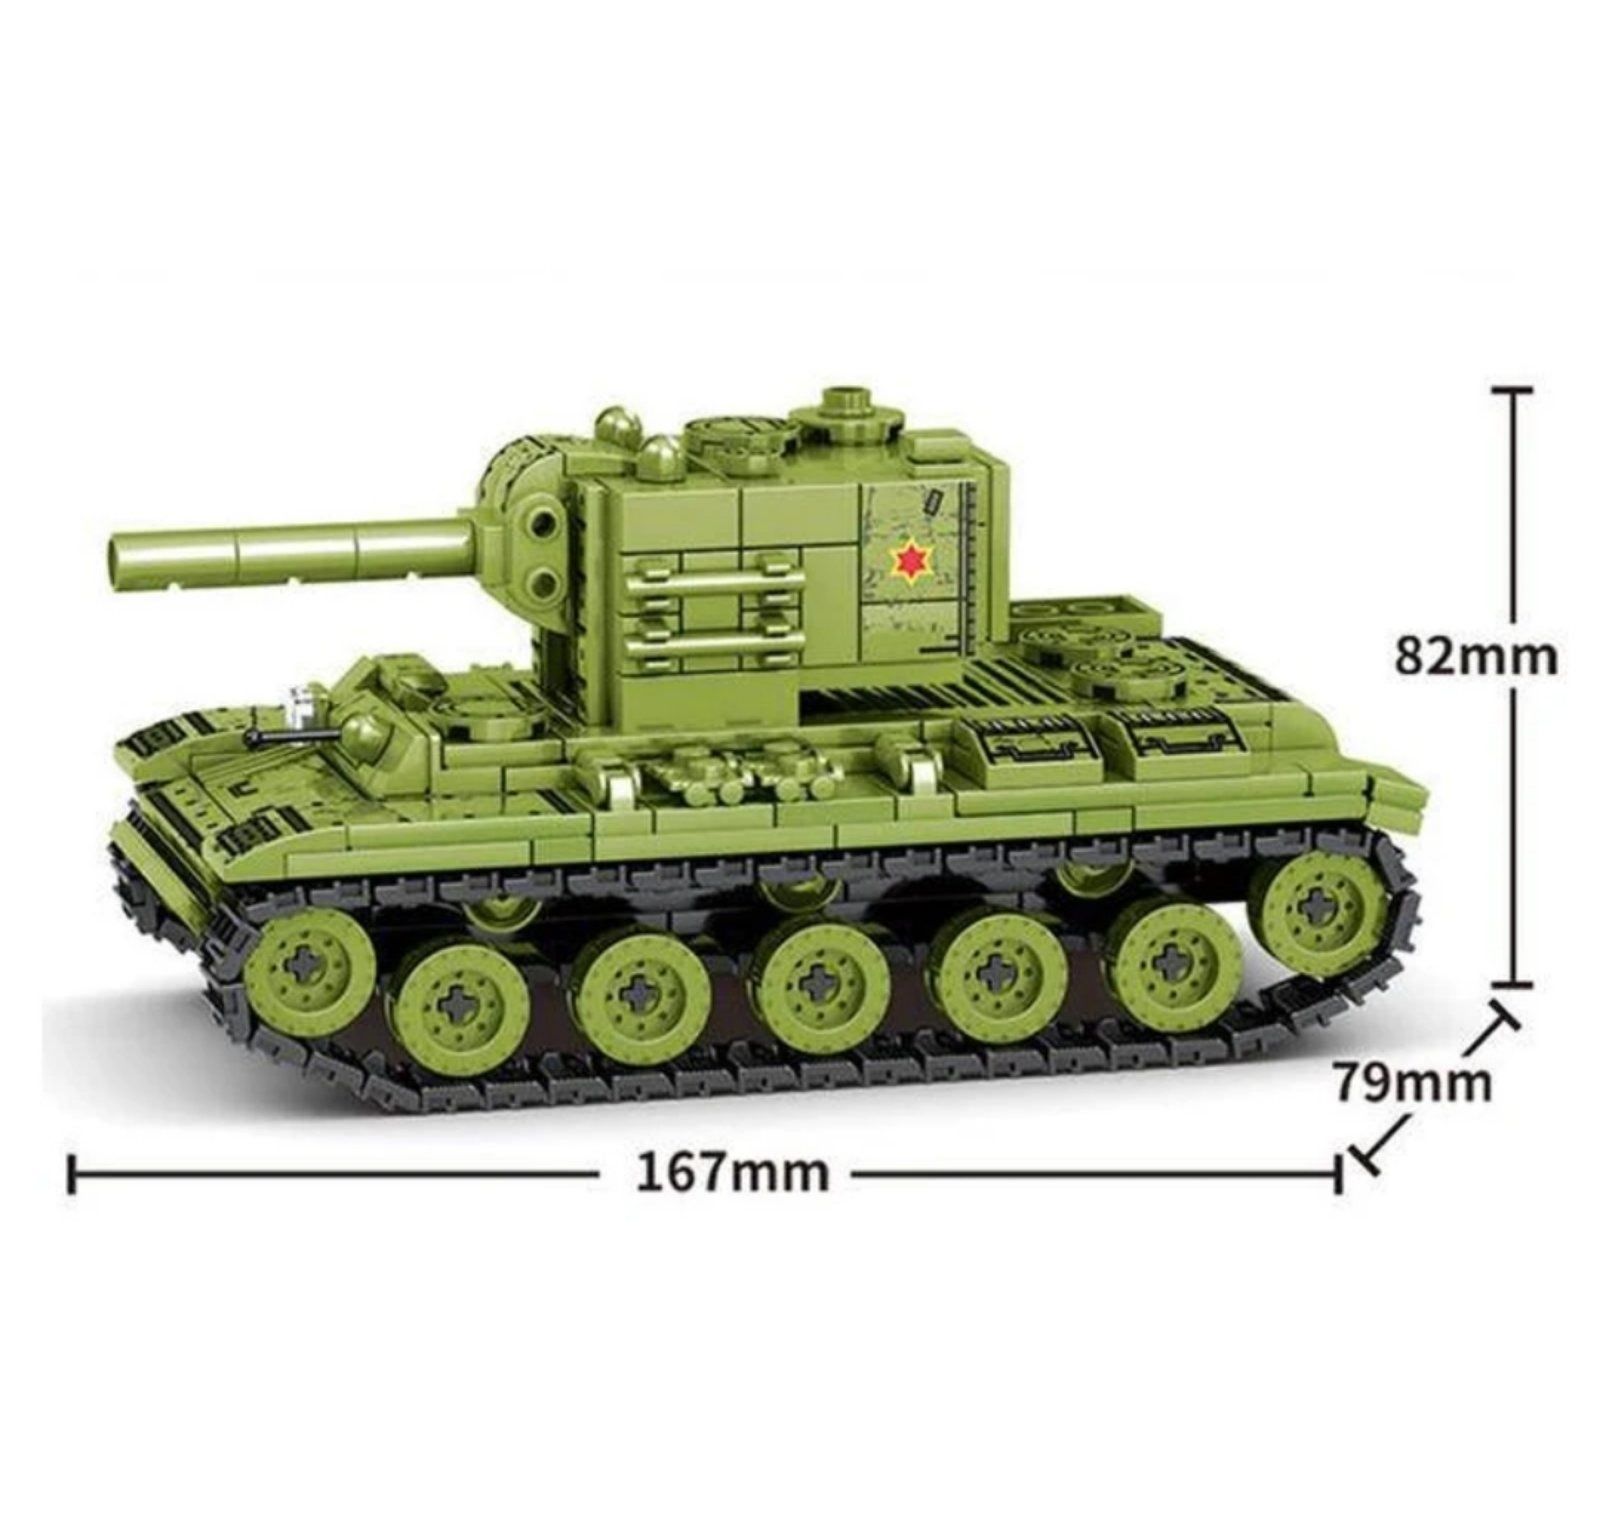 Детский конструктор танк КВ 2 лего 536 шт истребитель танков